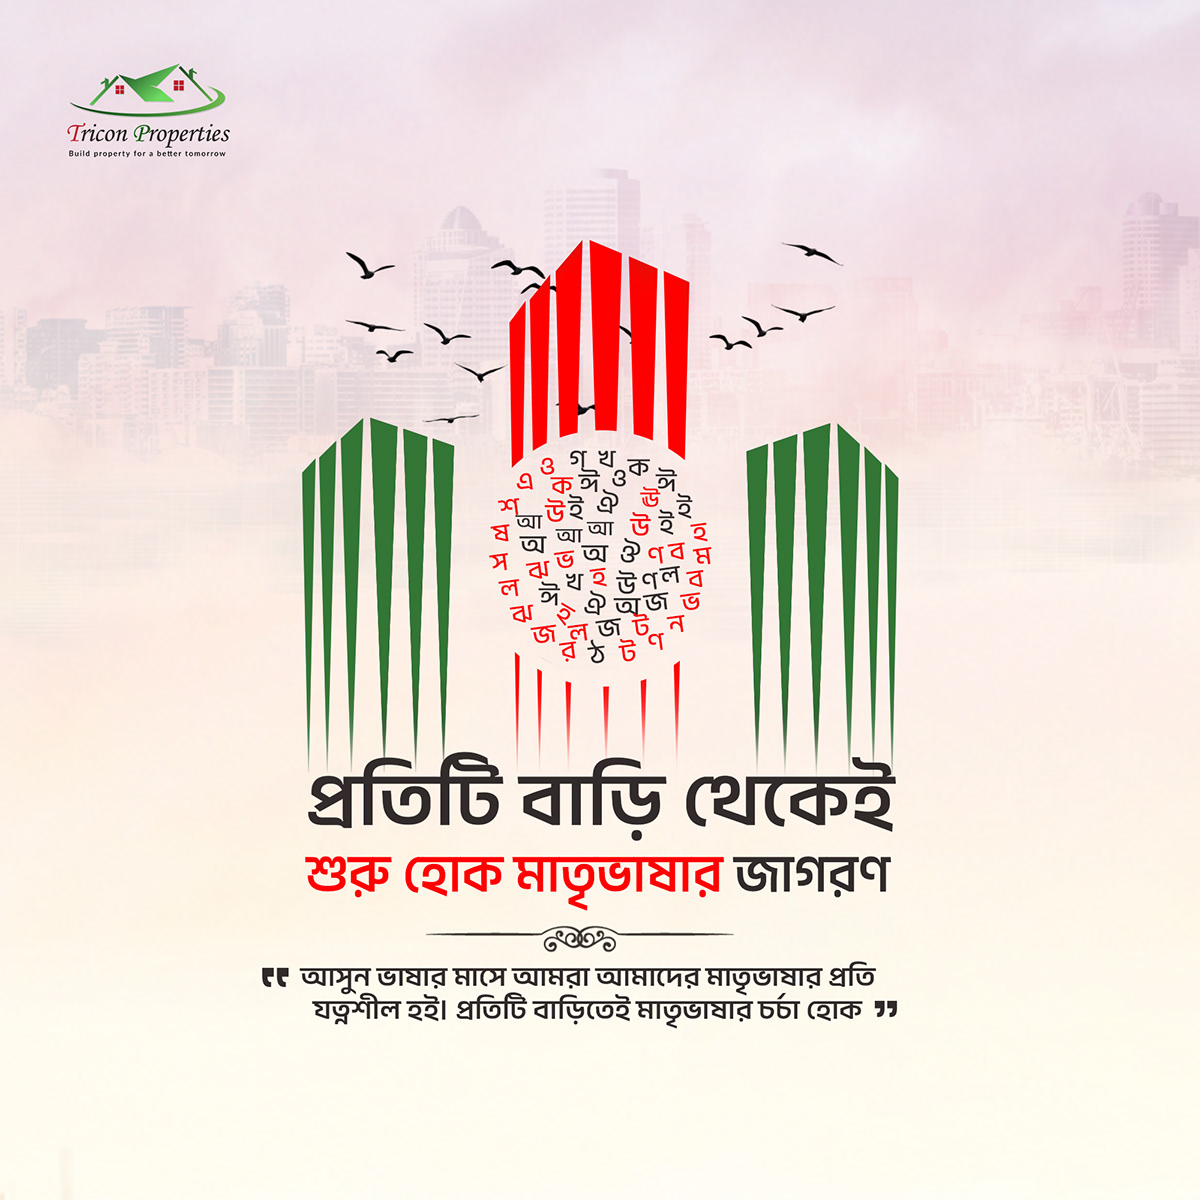 21st February একুশে ফেব্রুয়ারি আন্তর্জাতিক মাতৃভাষা দিবস অমর একুশে 21 february Mother Language day Shaheed minar ekushey february 21st মাতৃভাষা দিবস